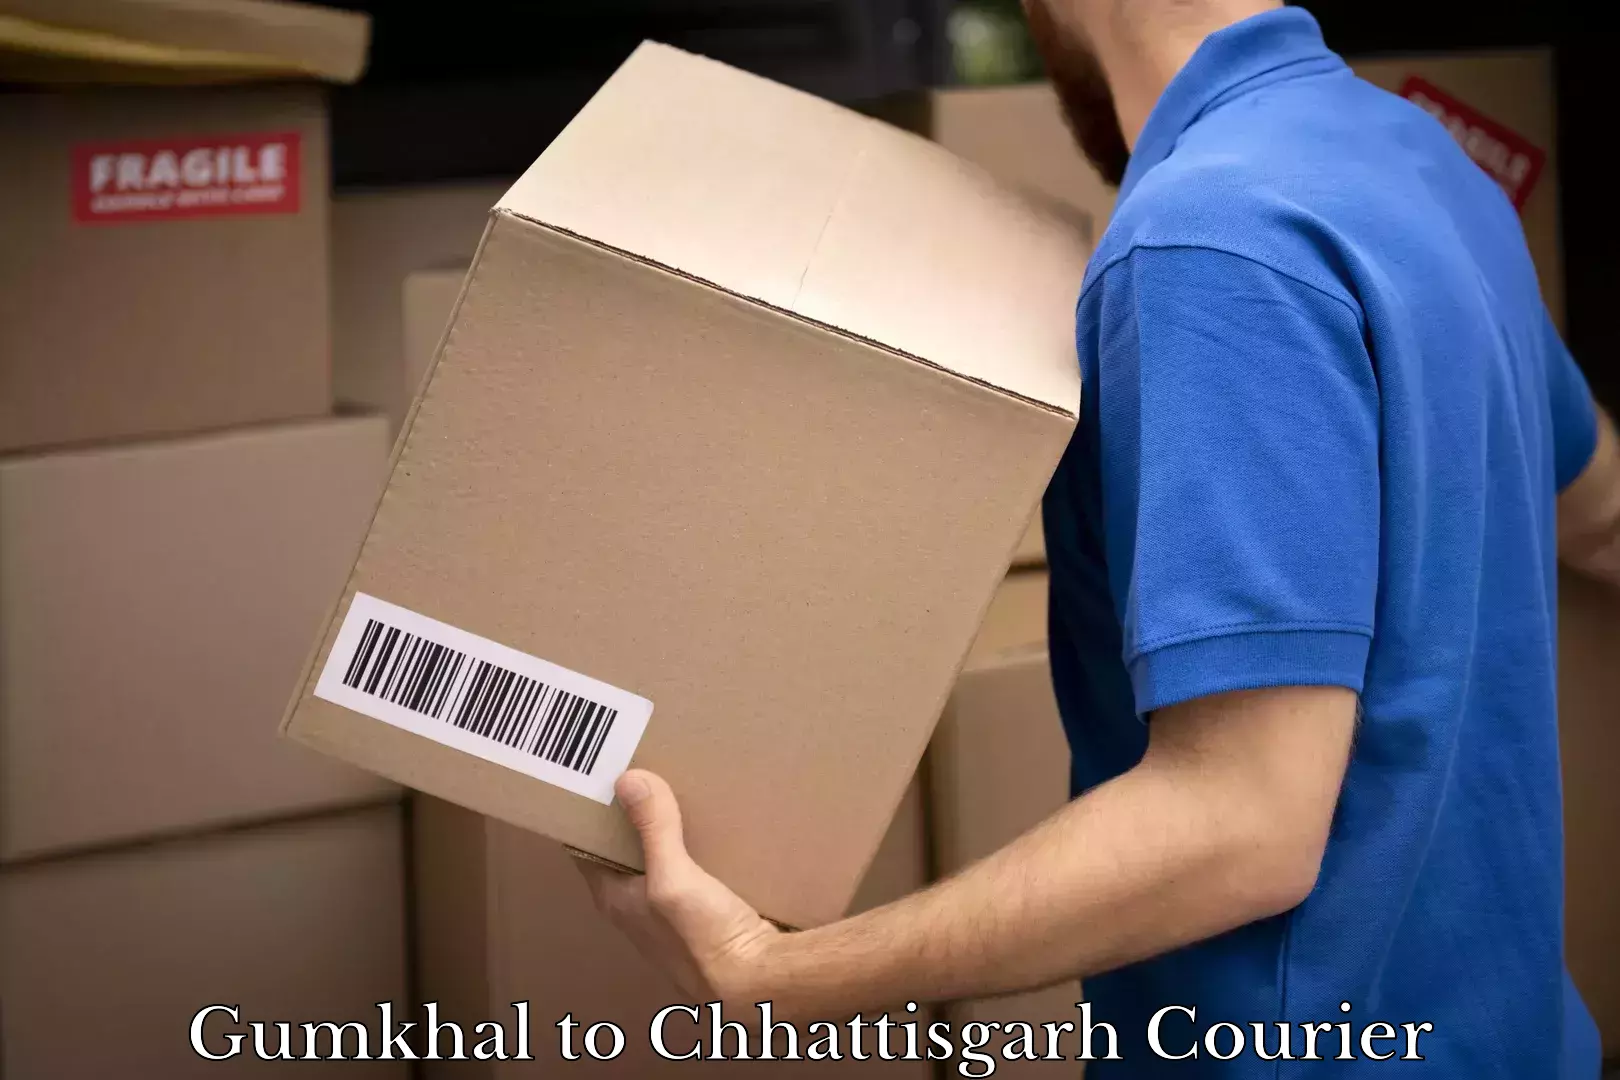 Courier service comparison Gumkhal to Chhattisgarh